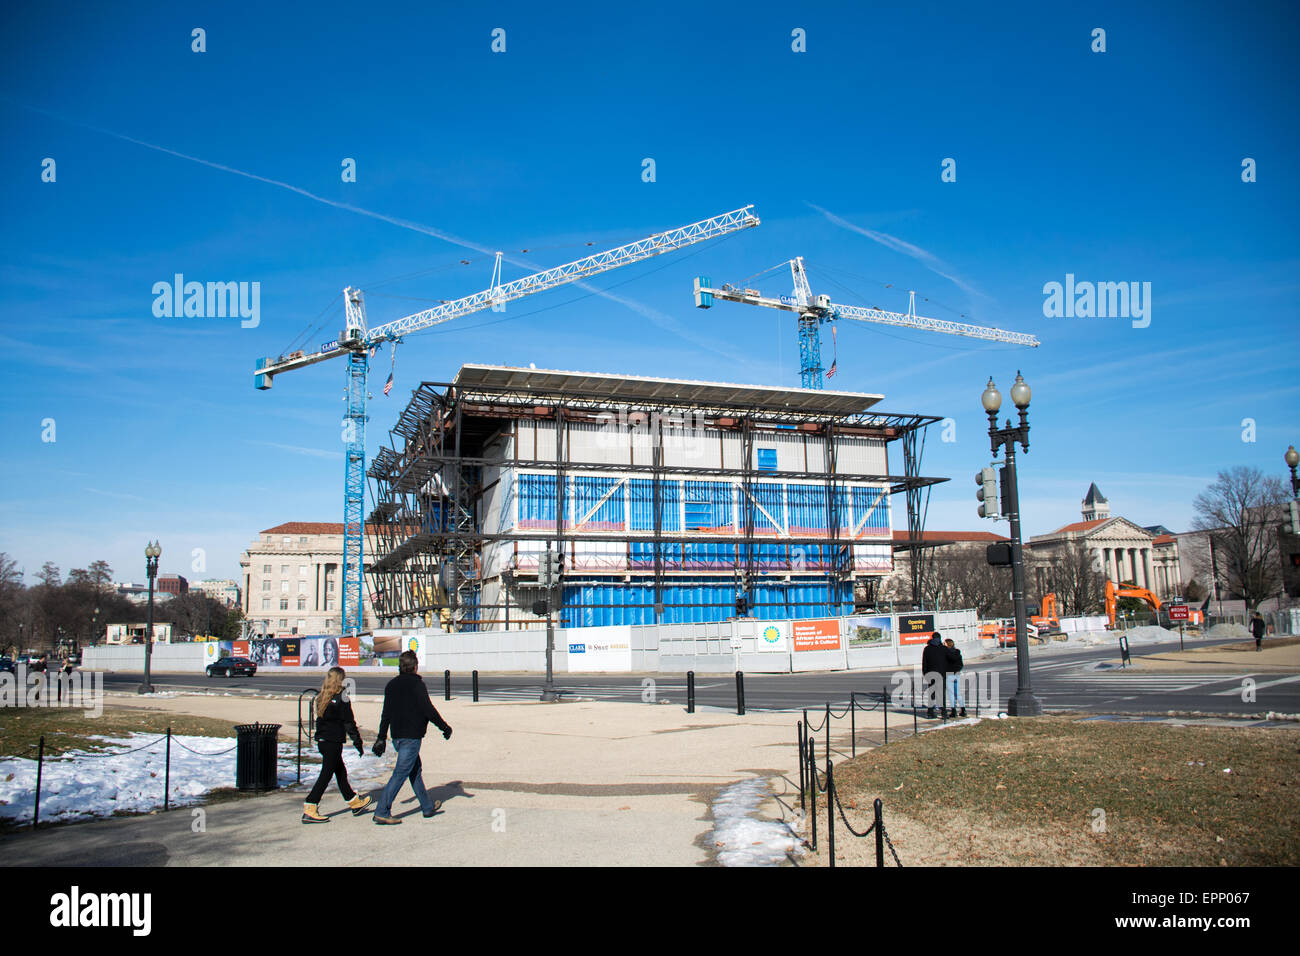 WASHINGTON DC, EE.UU. - El avance de la construcción de la Smithsonian Museo Afroamericano en enero de 2015. El museo está situado en el National Mall, cerca del Monumento a Washington, y está programado para abrir en el 2016. Foto de stock